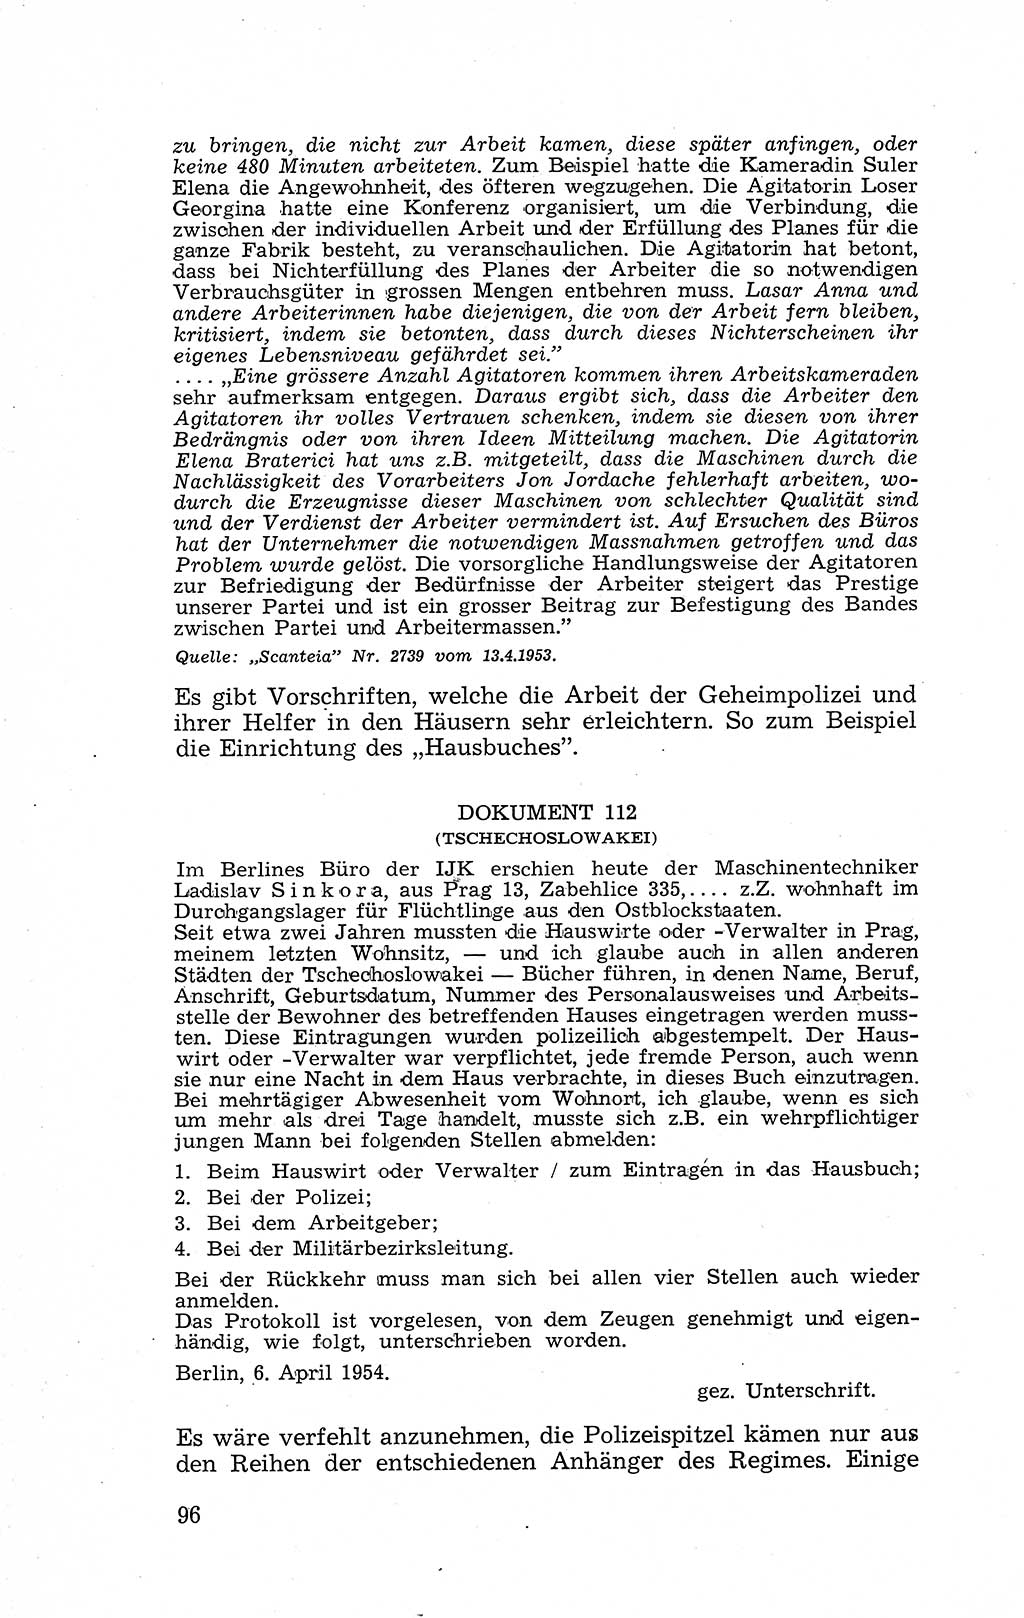 Recht in Fesseln, Dokumente, Internationale Juristen-Kommission [Bundesrepublik Deutschland (BRD)] 1955, Seite 96 (R. Dok. IJK BRD 1955, S. 96)